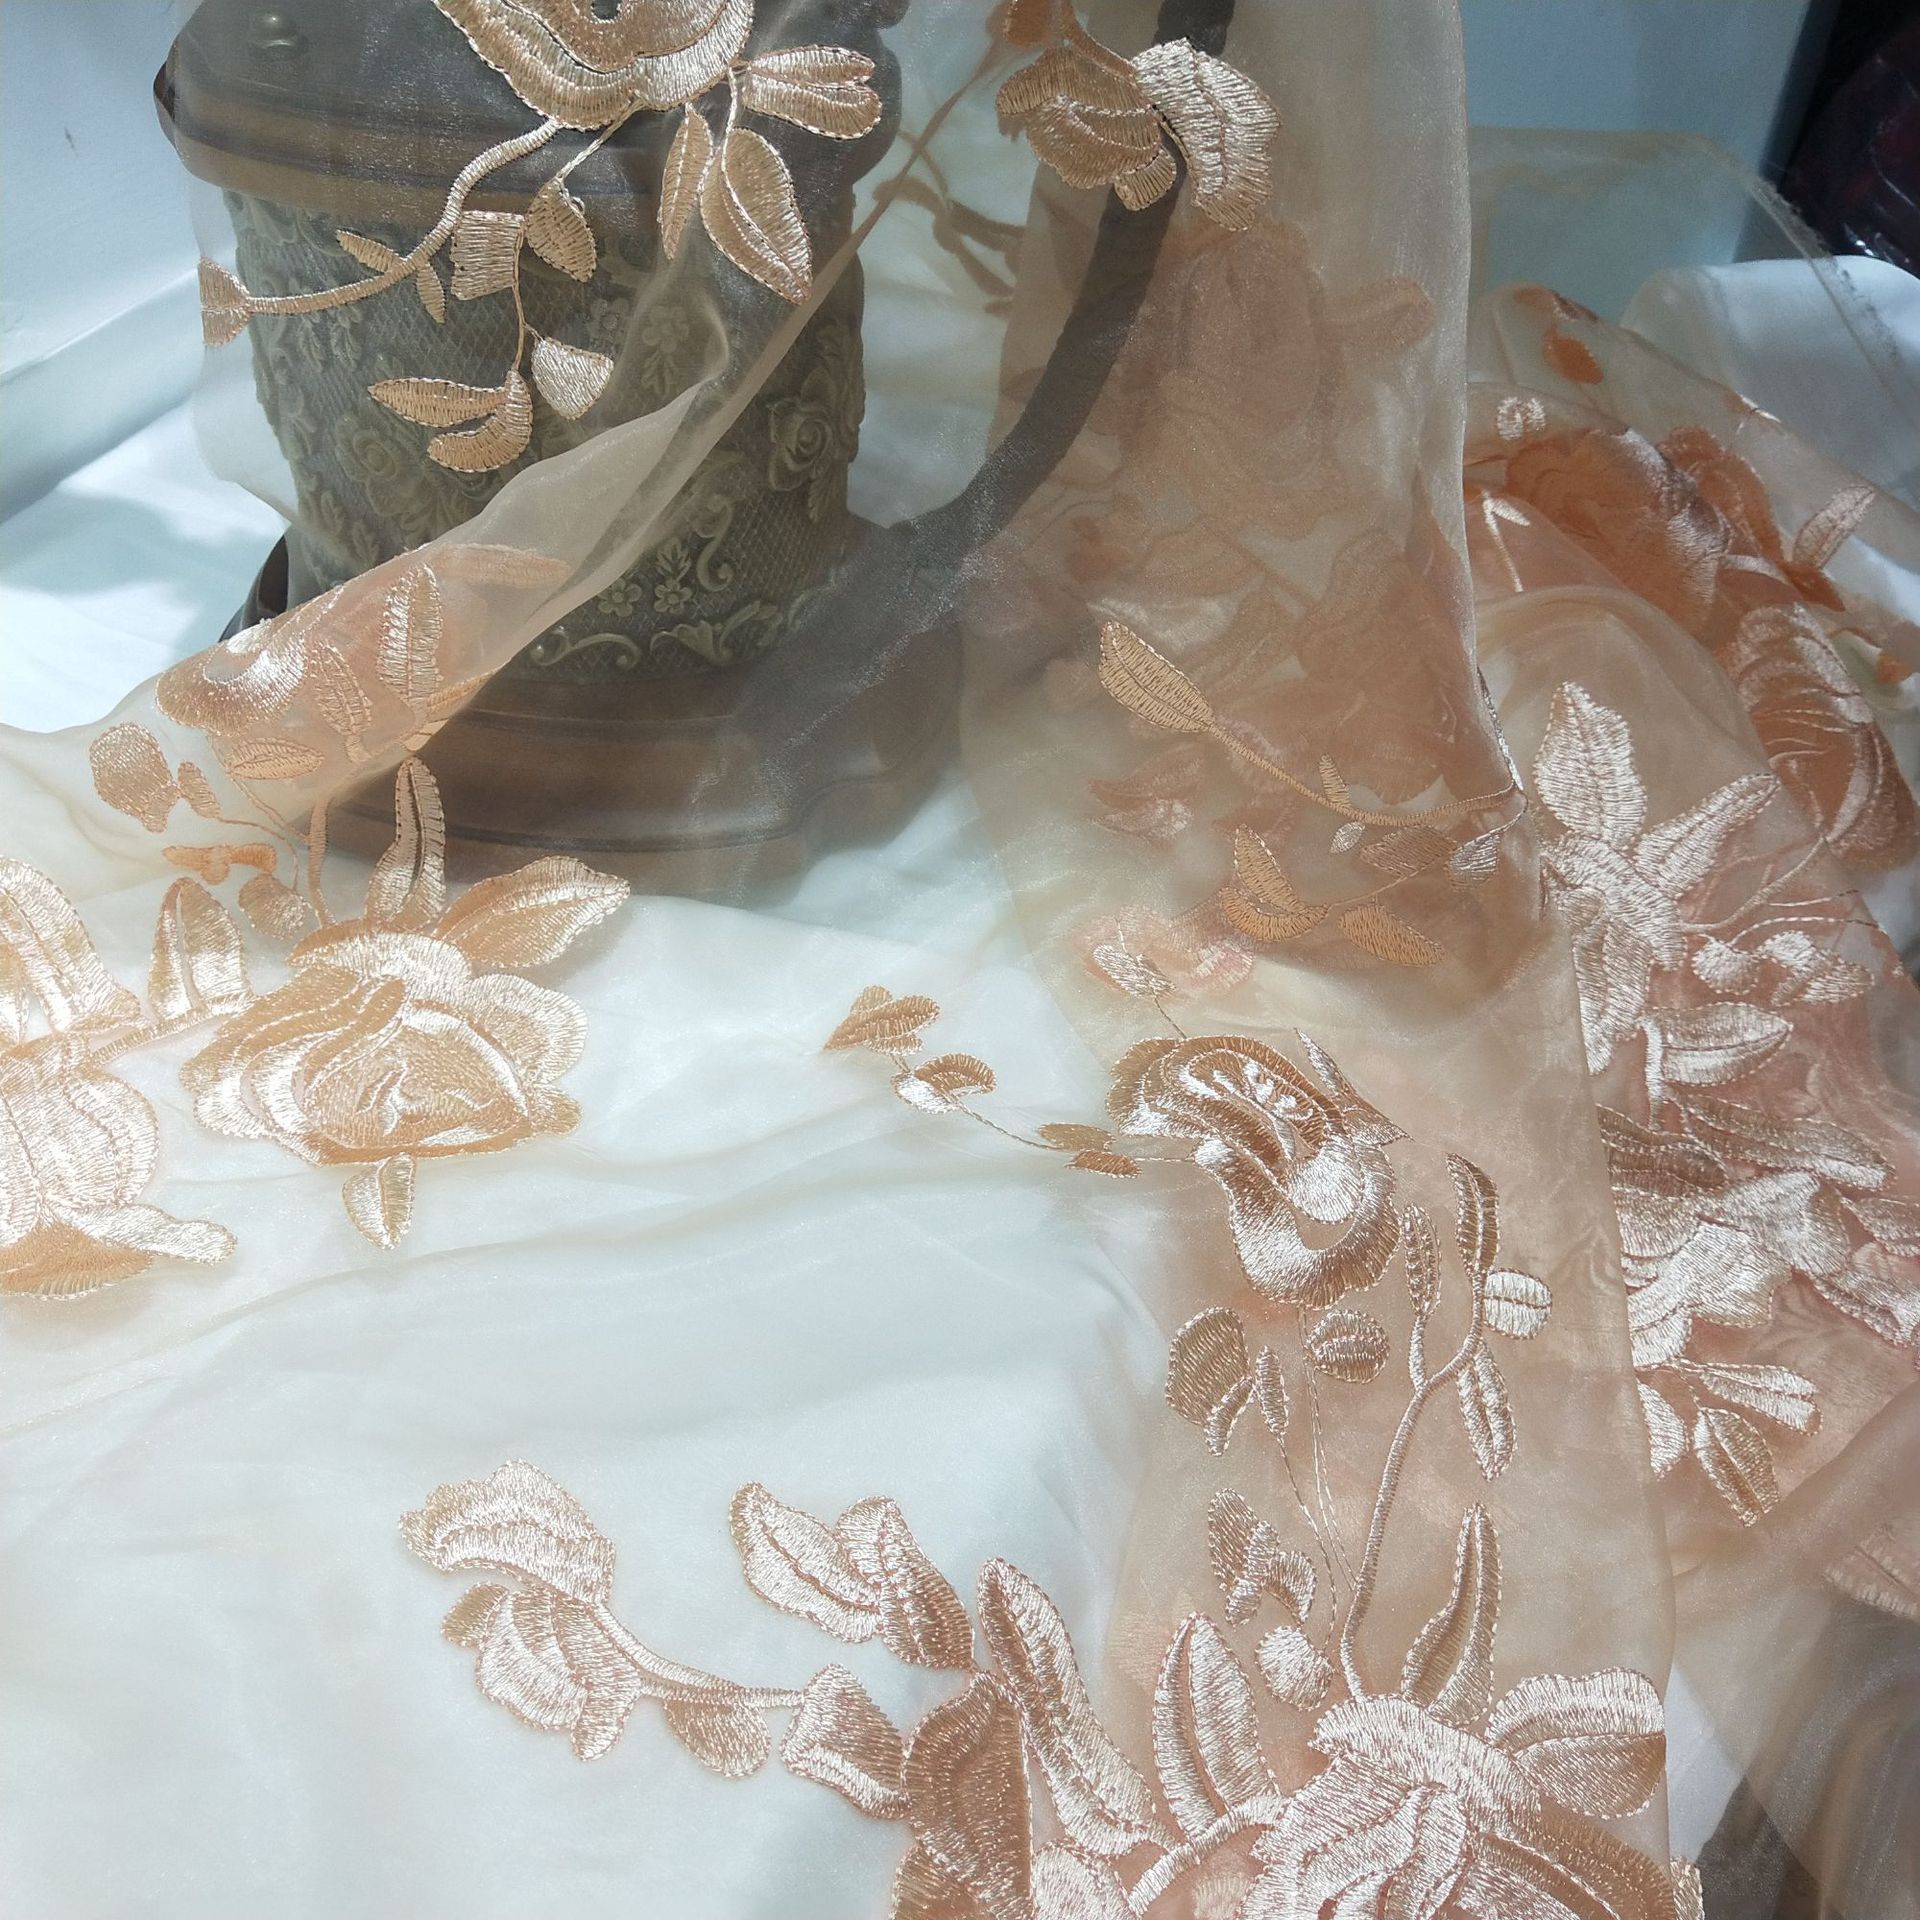 油画里的薄纱少女 婚纱来自国内设计师品牌:Amusee Moi